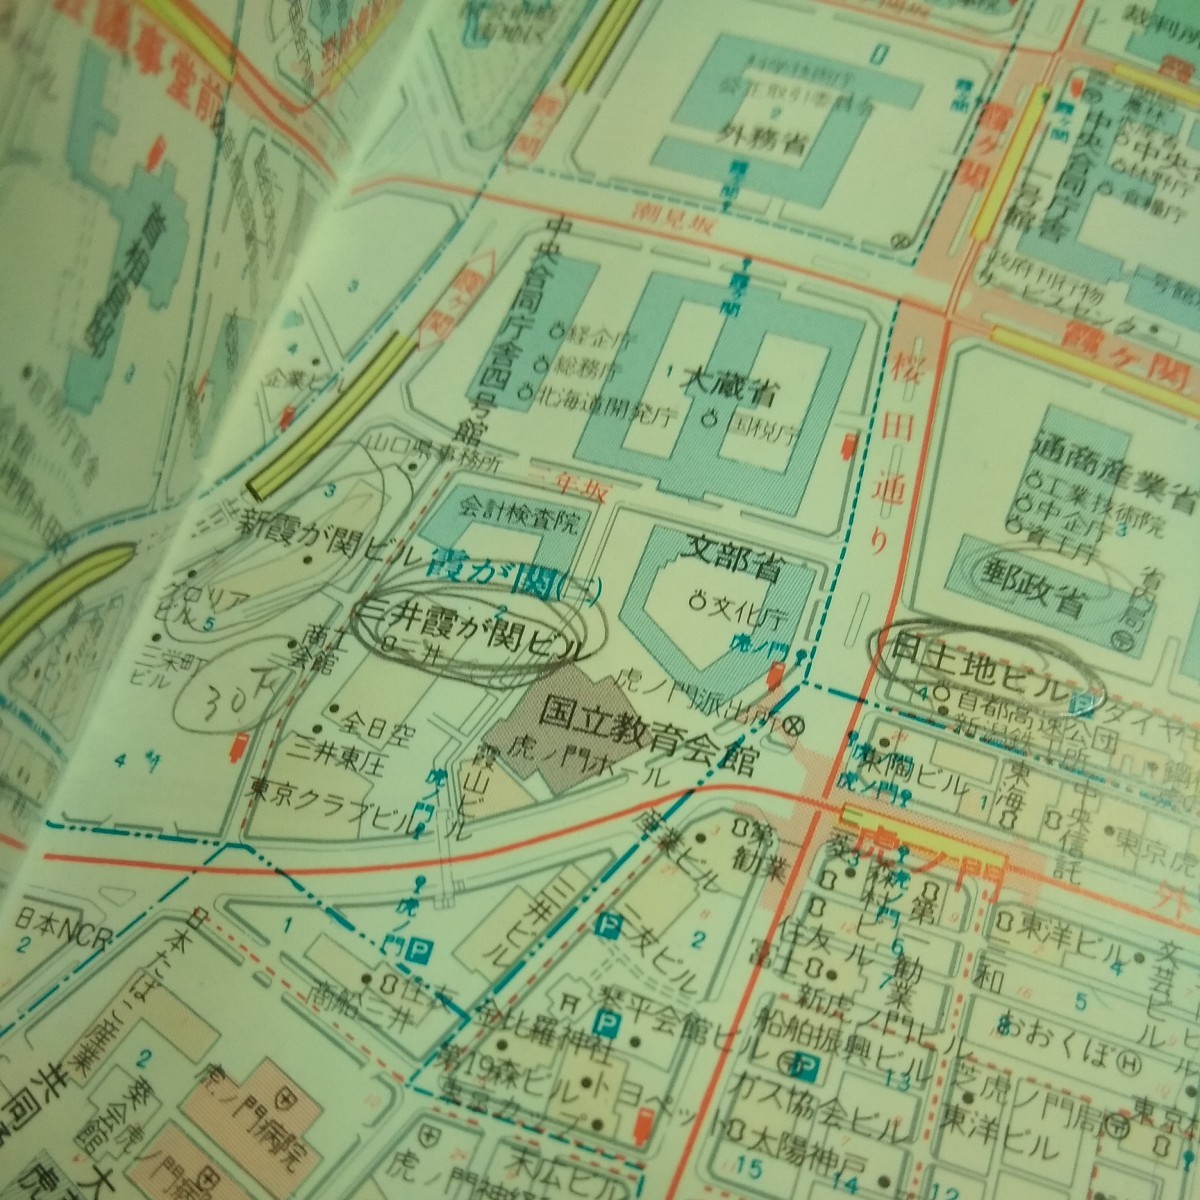 e-231 エアリアマップ ニューエストS1 新版 東京都区分地図 昭文社 昭和62年7月 ※10_書き込みあり。